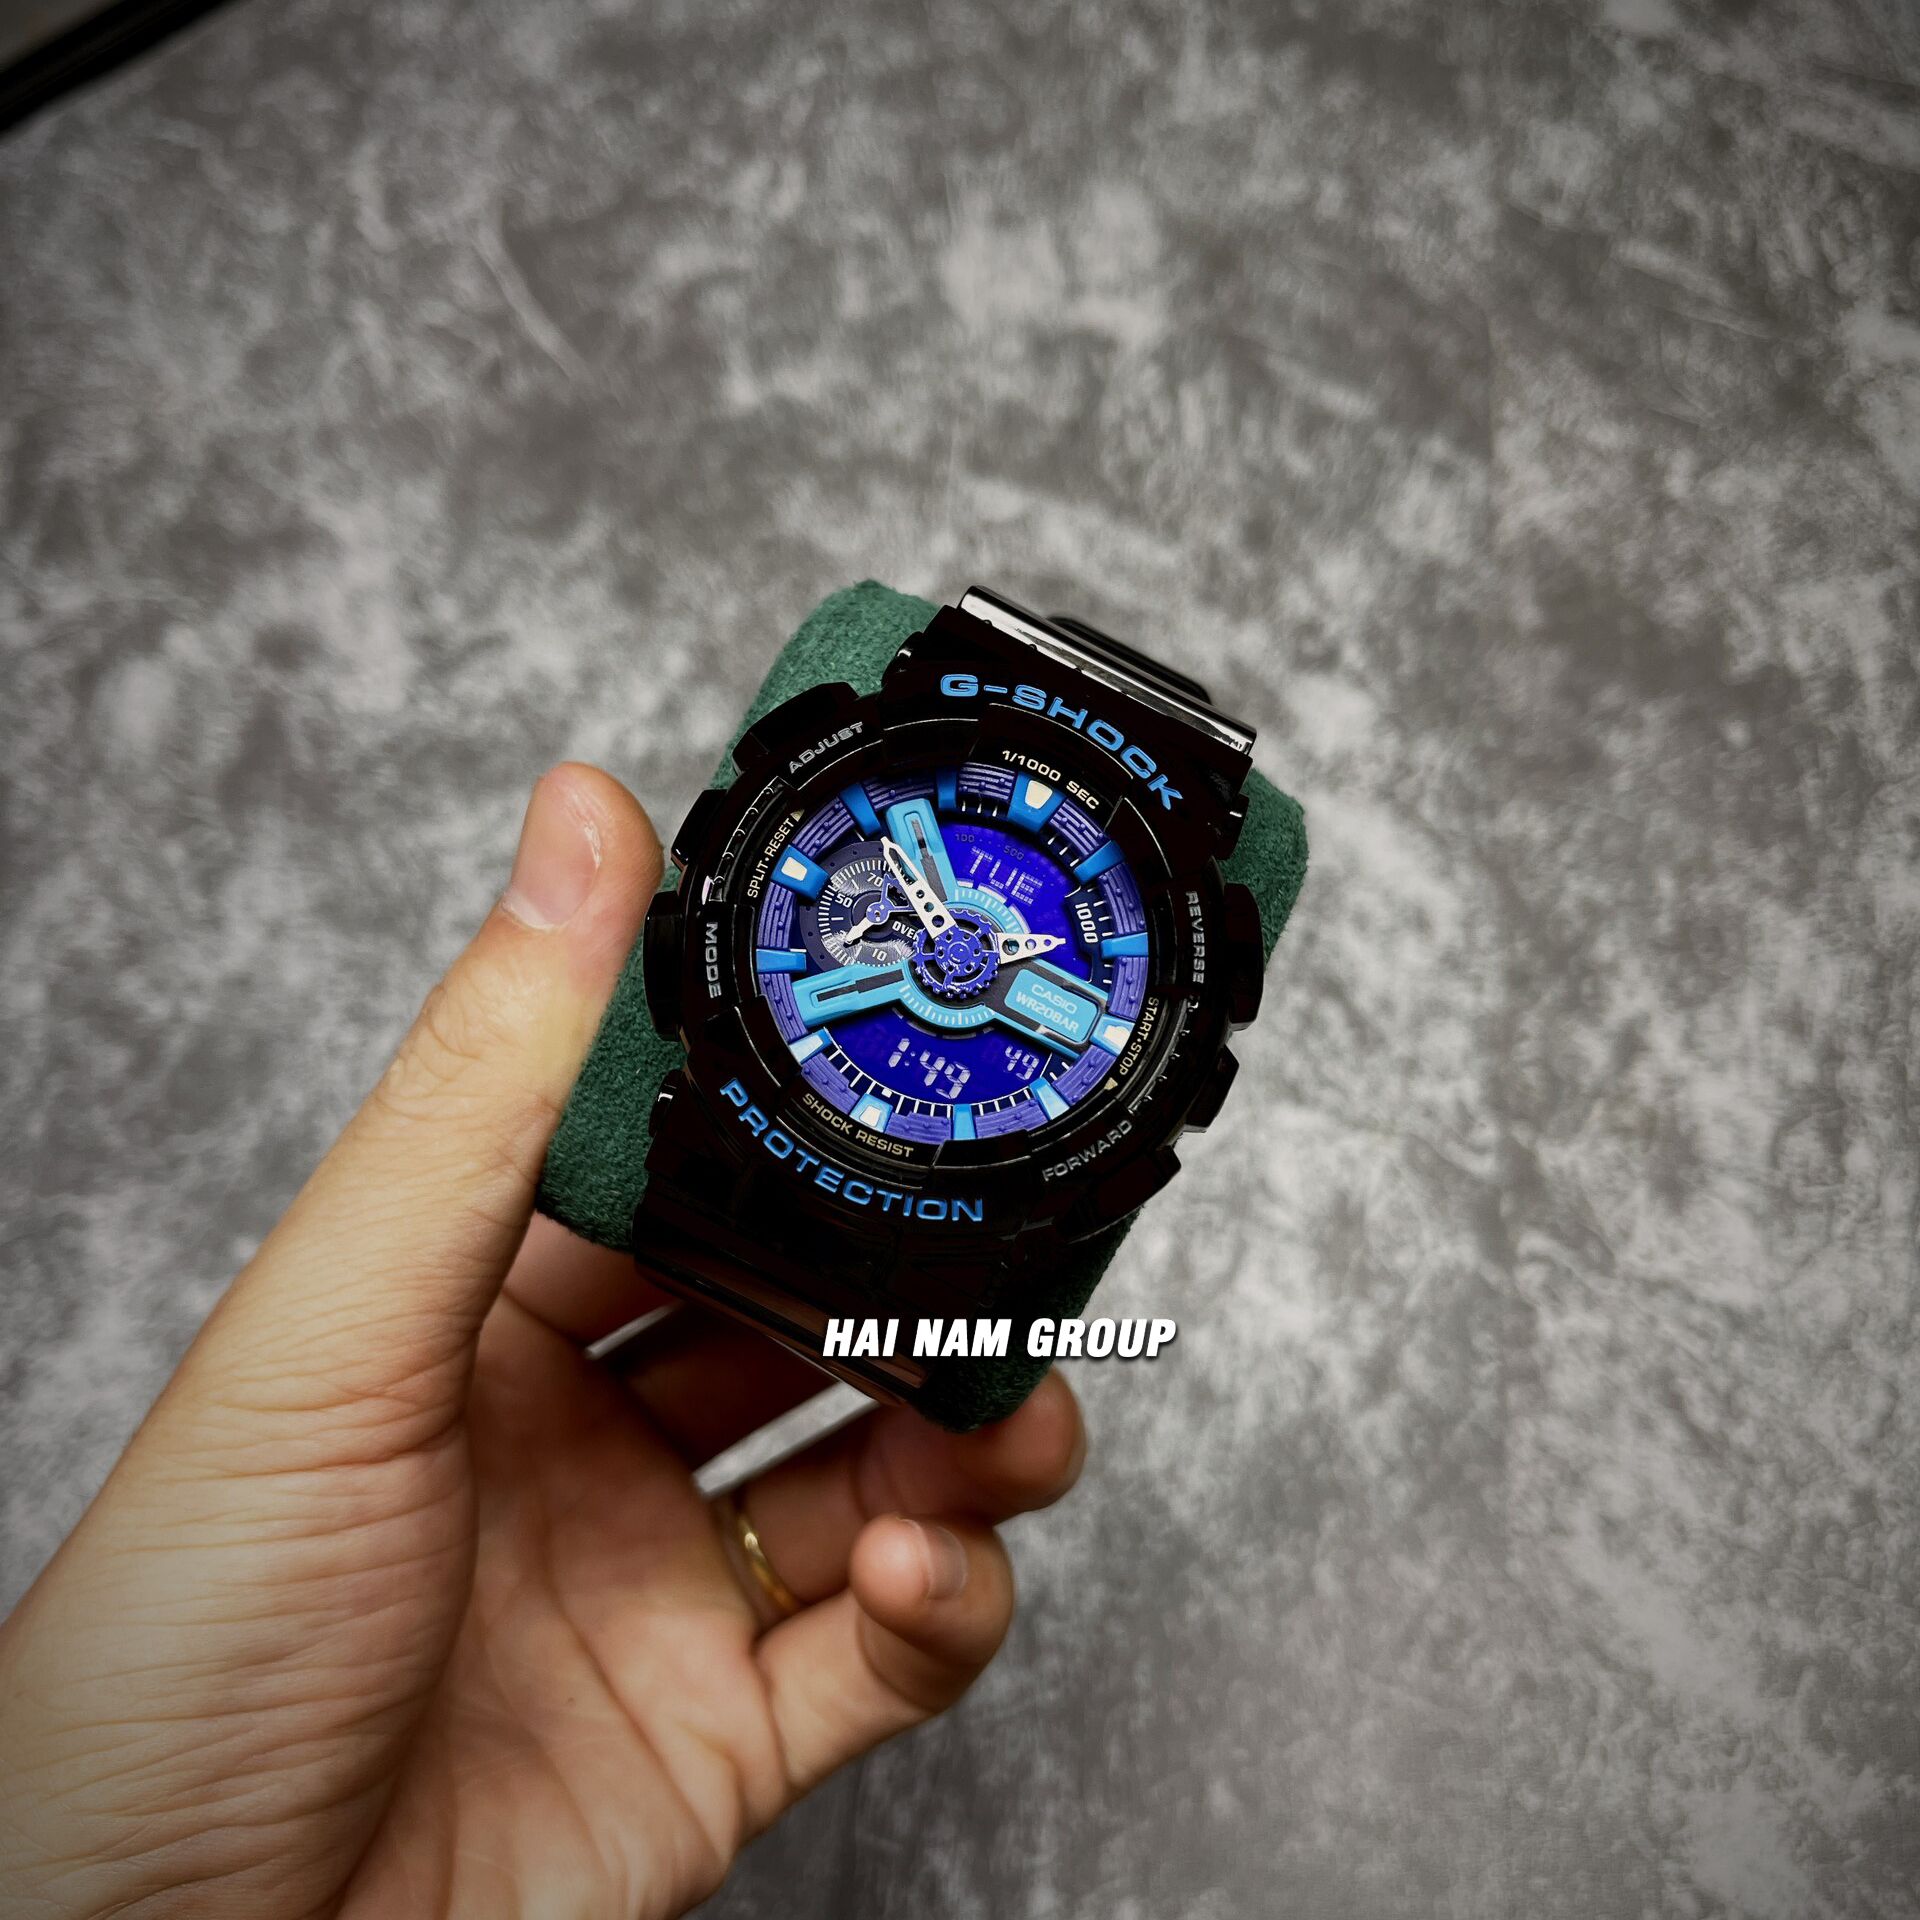 Đồng hồ nam nữ G-SHOCK GA-110HC-1A REP 1:1 Đen Mặt Xanh Tím tại Hải Nam Group 2